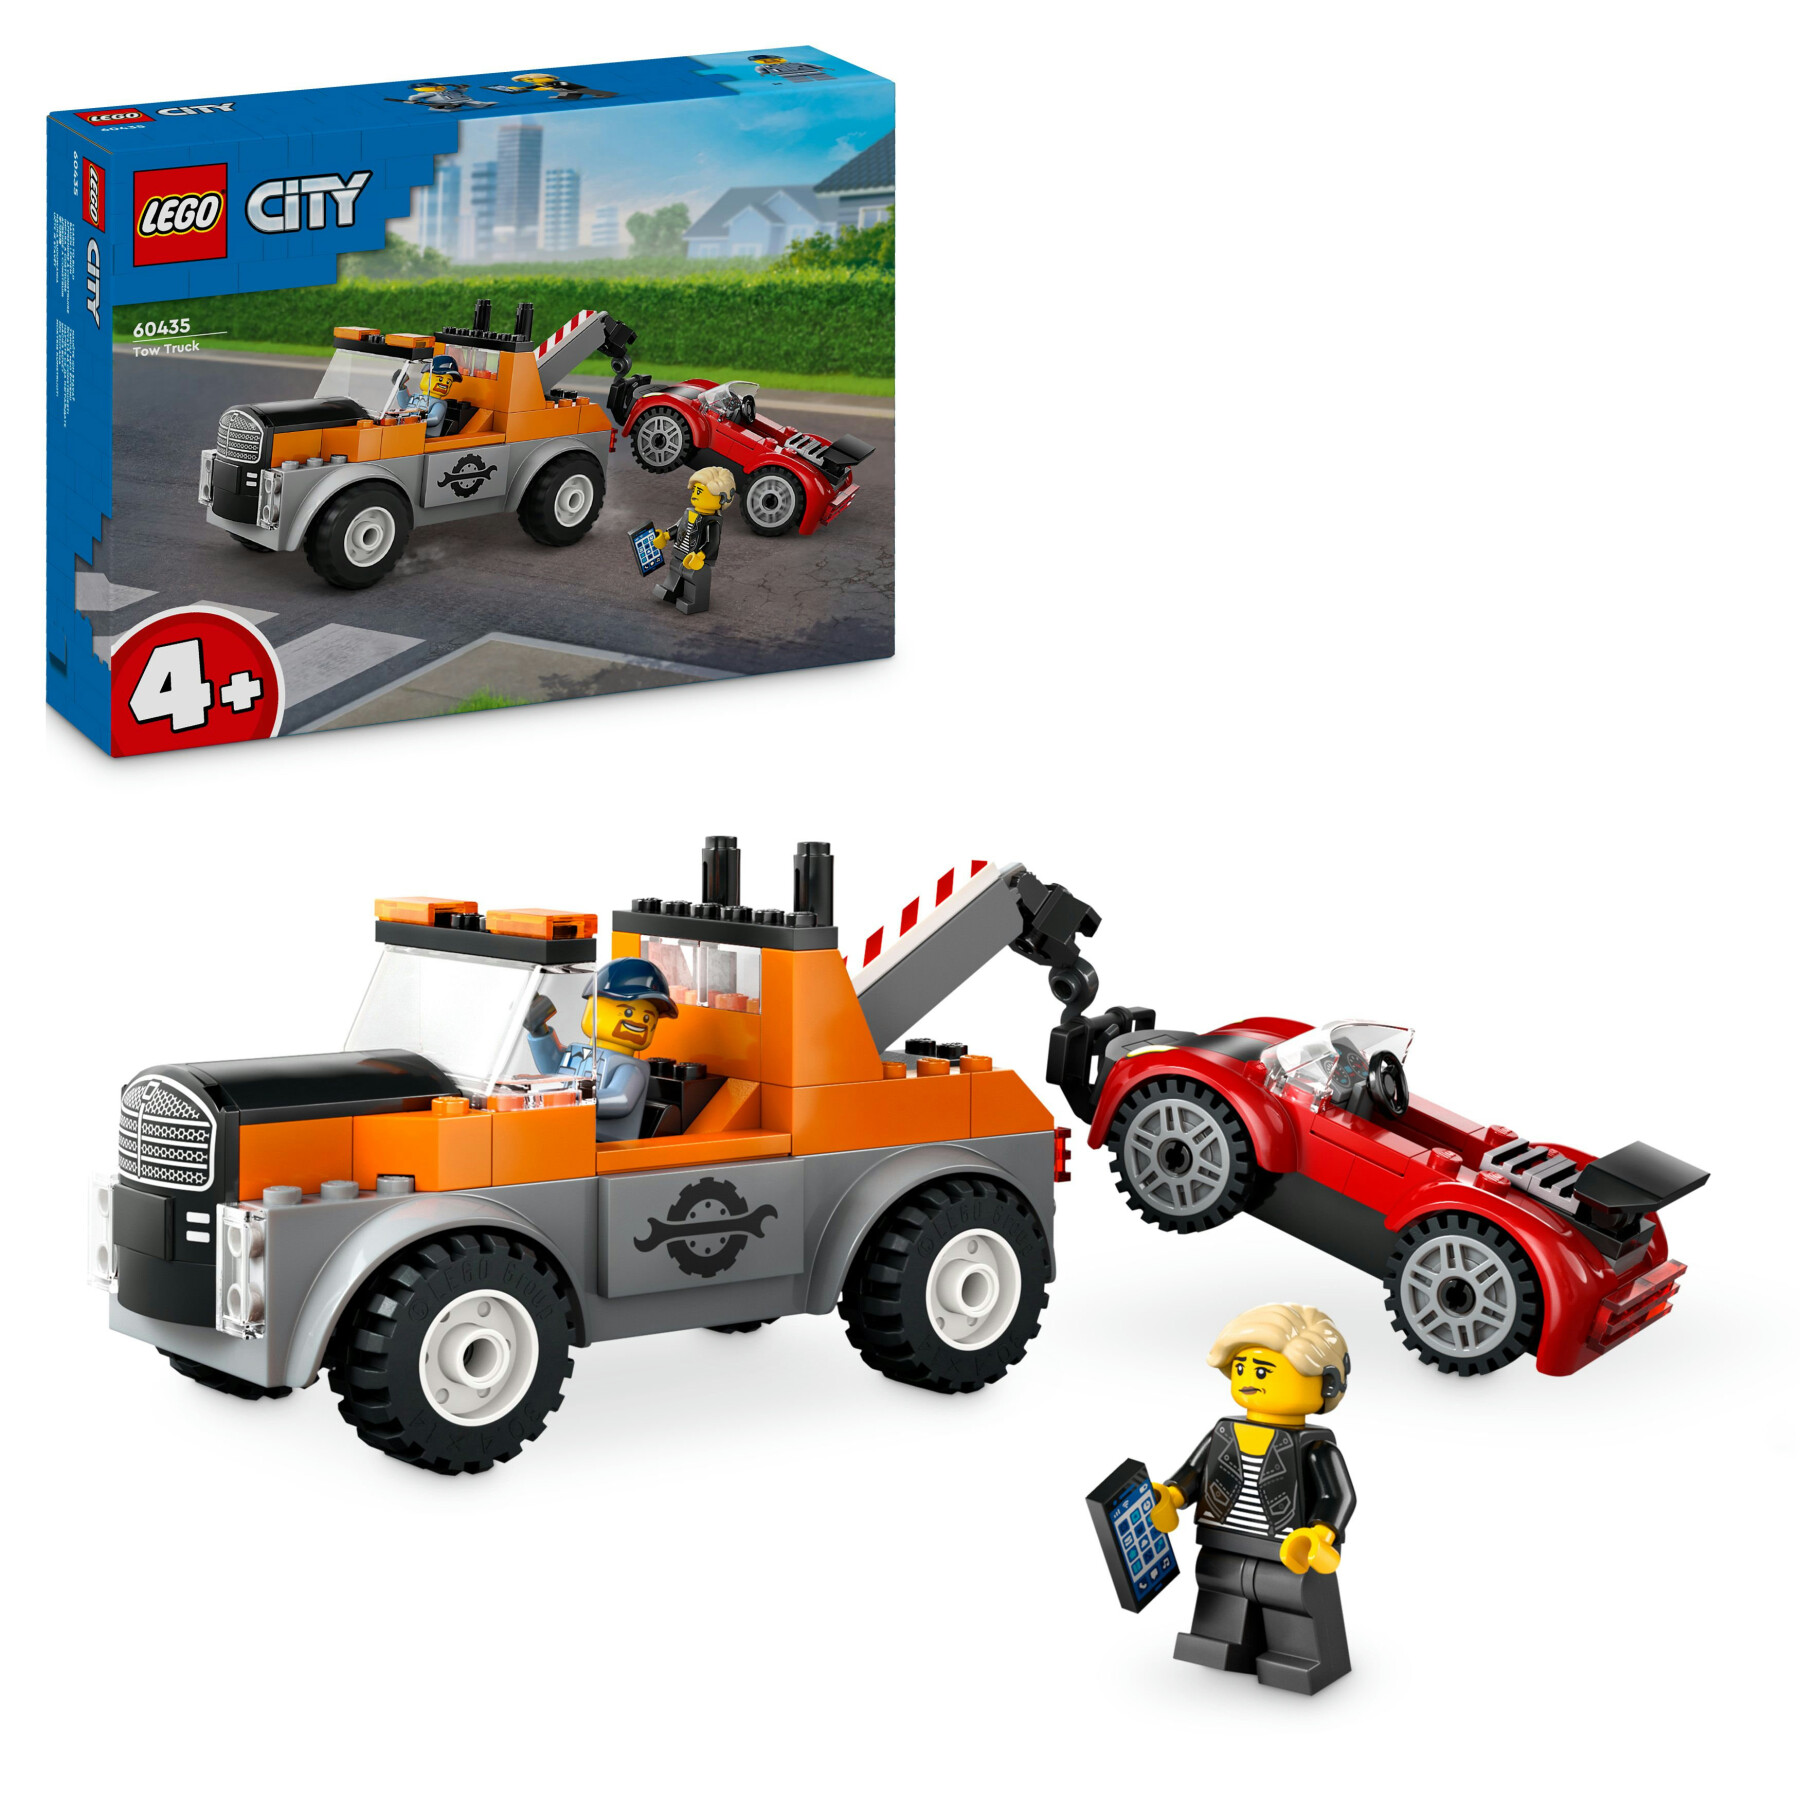 Lego city 60435 autogrù e officina auto sportive giocattolo, giochi da meccanico bambini 4+ con camion e macchina da costruire - LEGO CITY